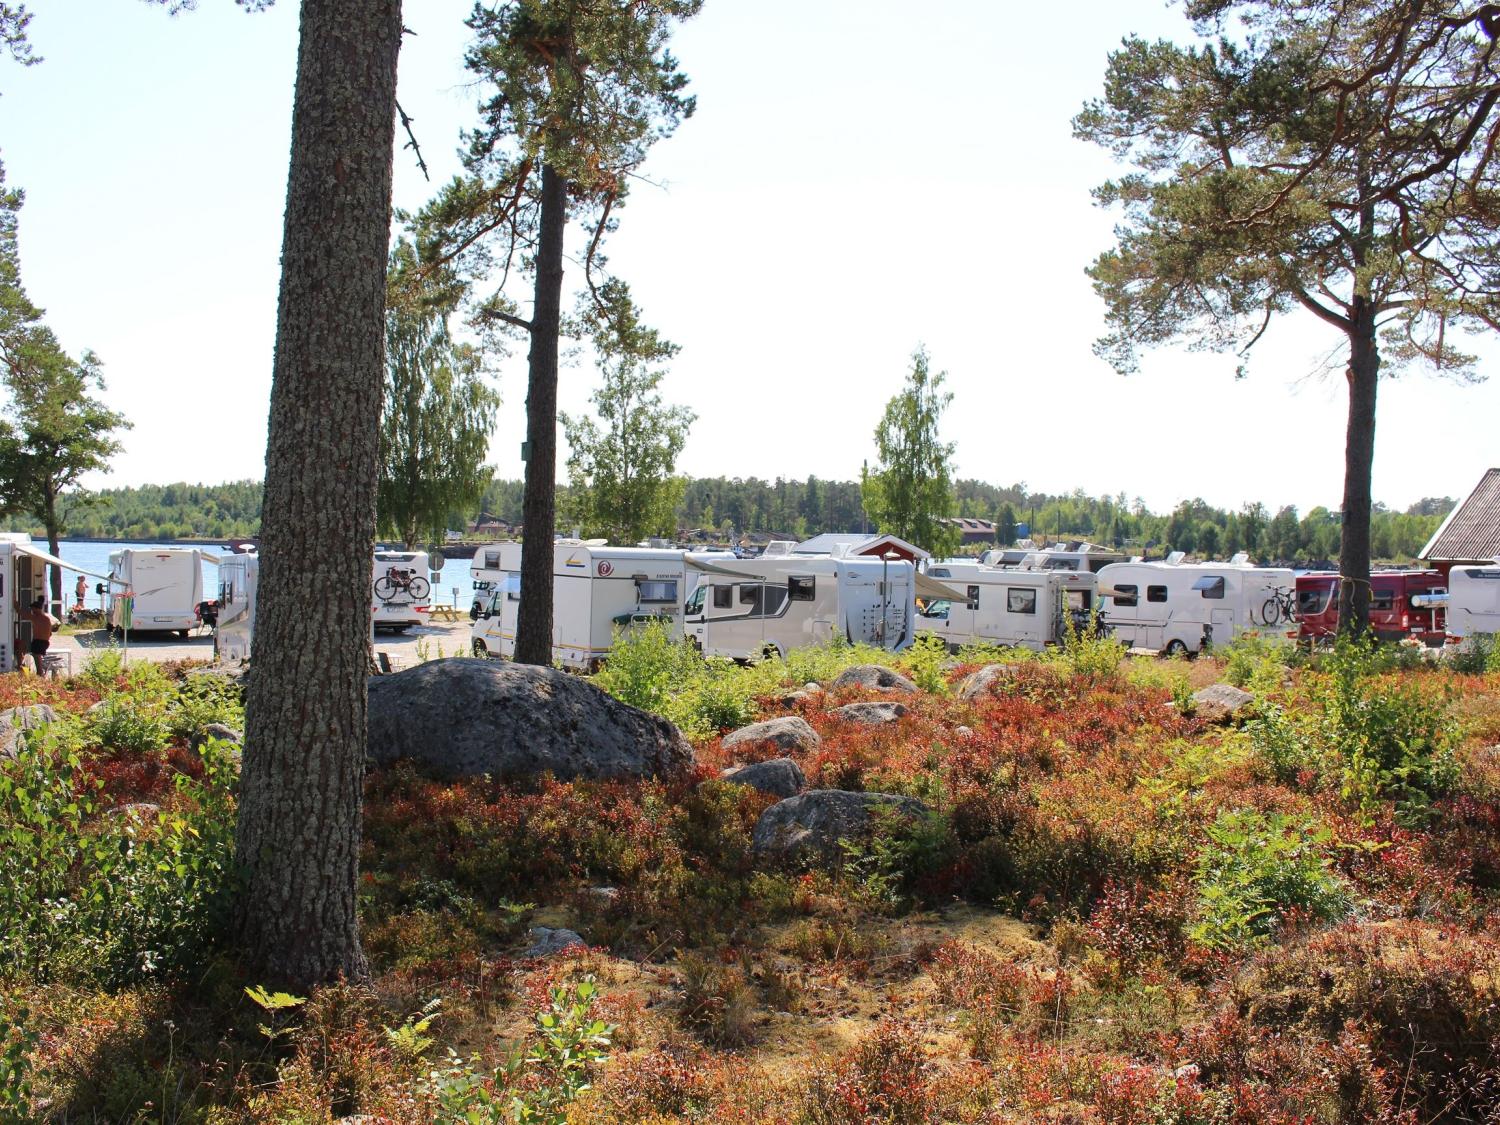 Stocka Guest Marina and RV Camping